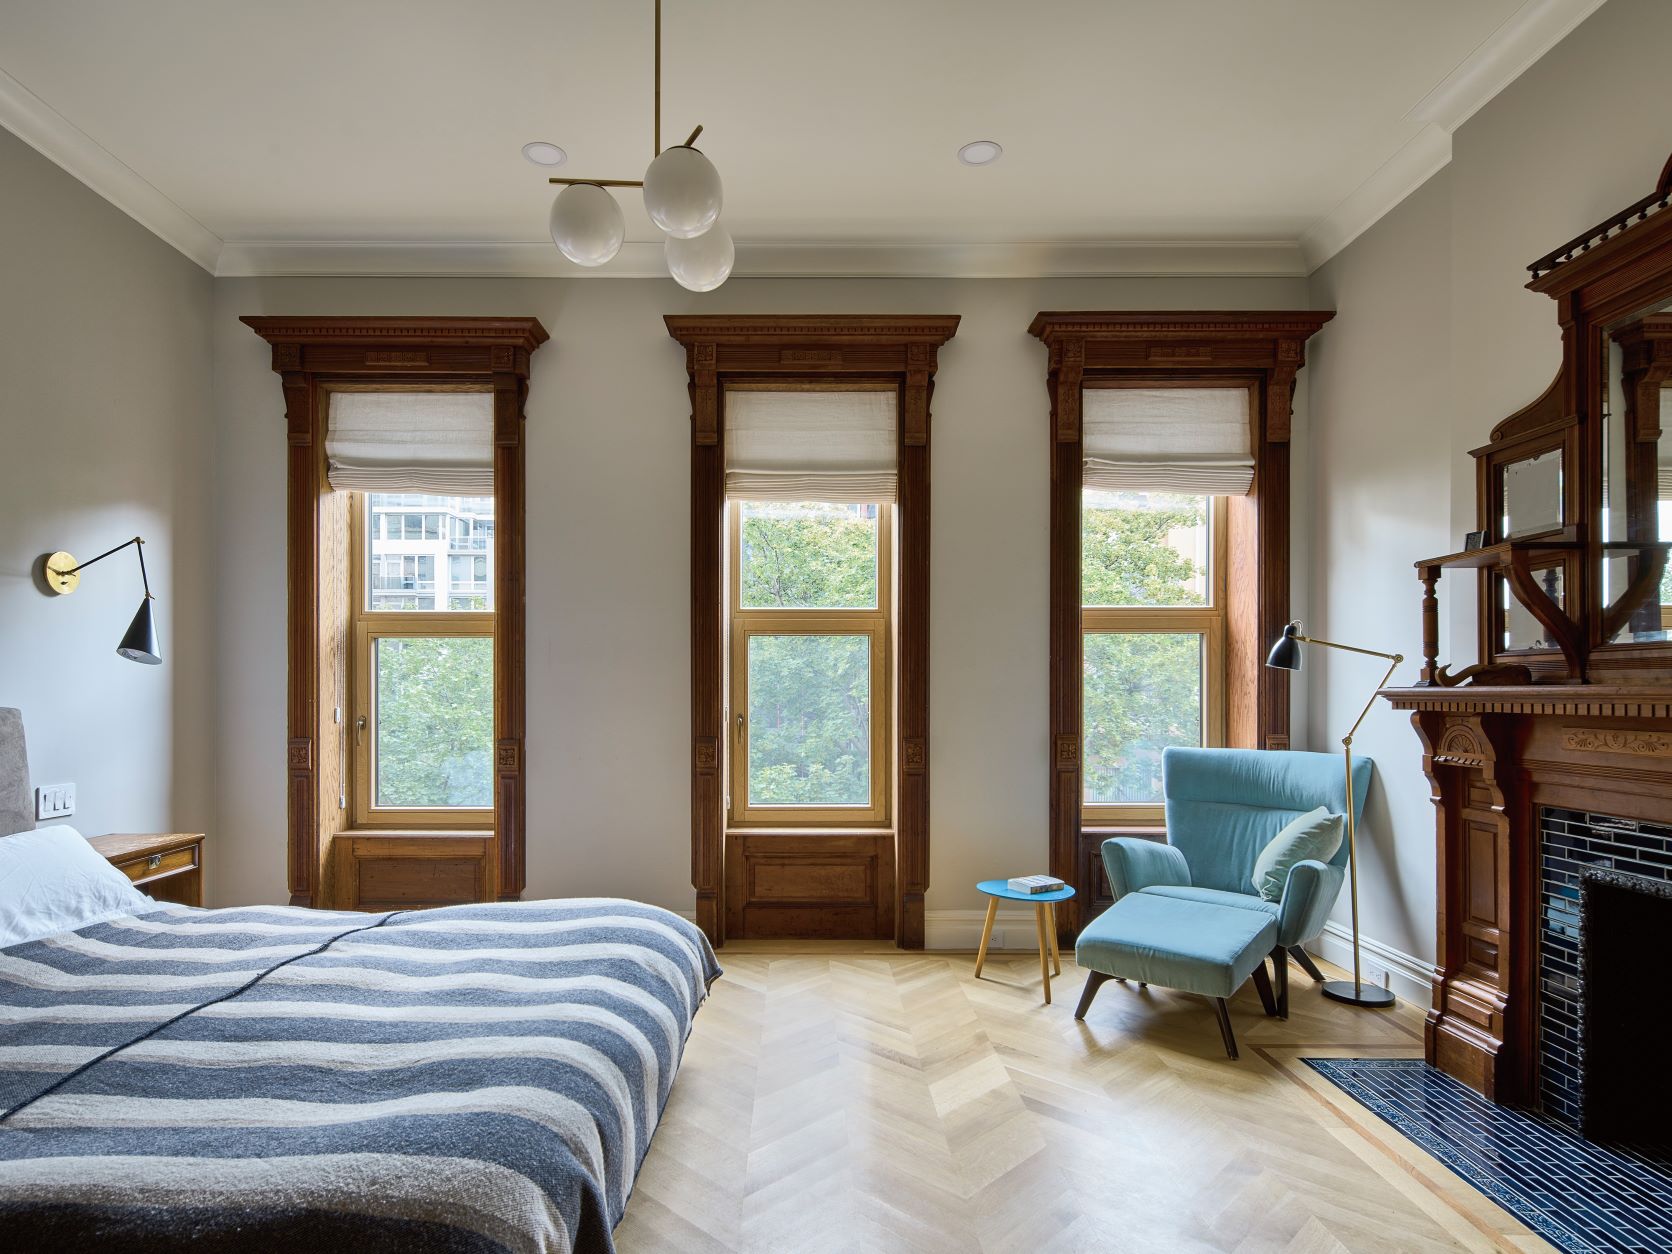 Harlem House 內部重溫古典結構，但室內軟裝色調上多採淺色系，避免過度淪為直觀的當代印象。